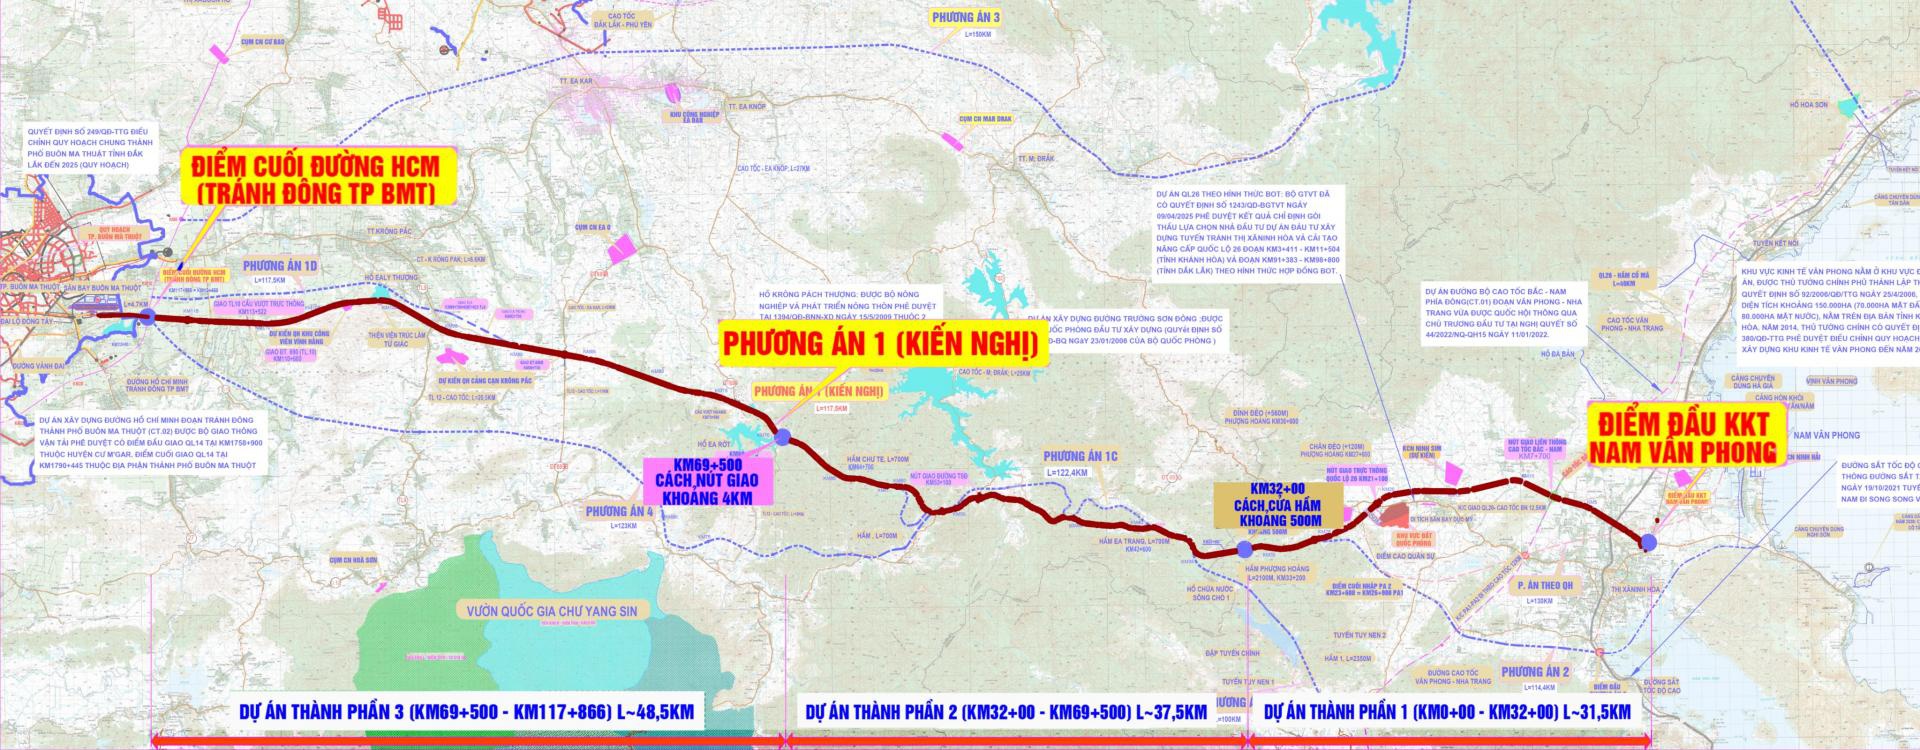 Bản đồ hướng tuyến cao tốc Khánh Hòa - Buôn Ma Thuột